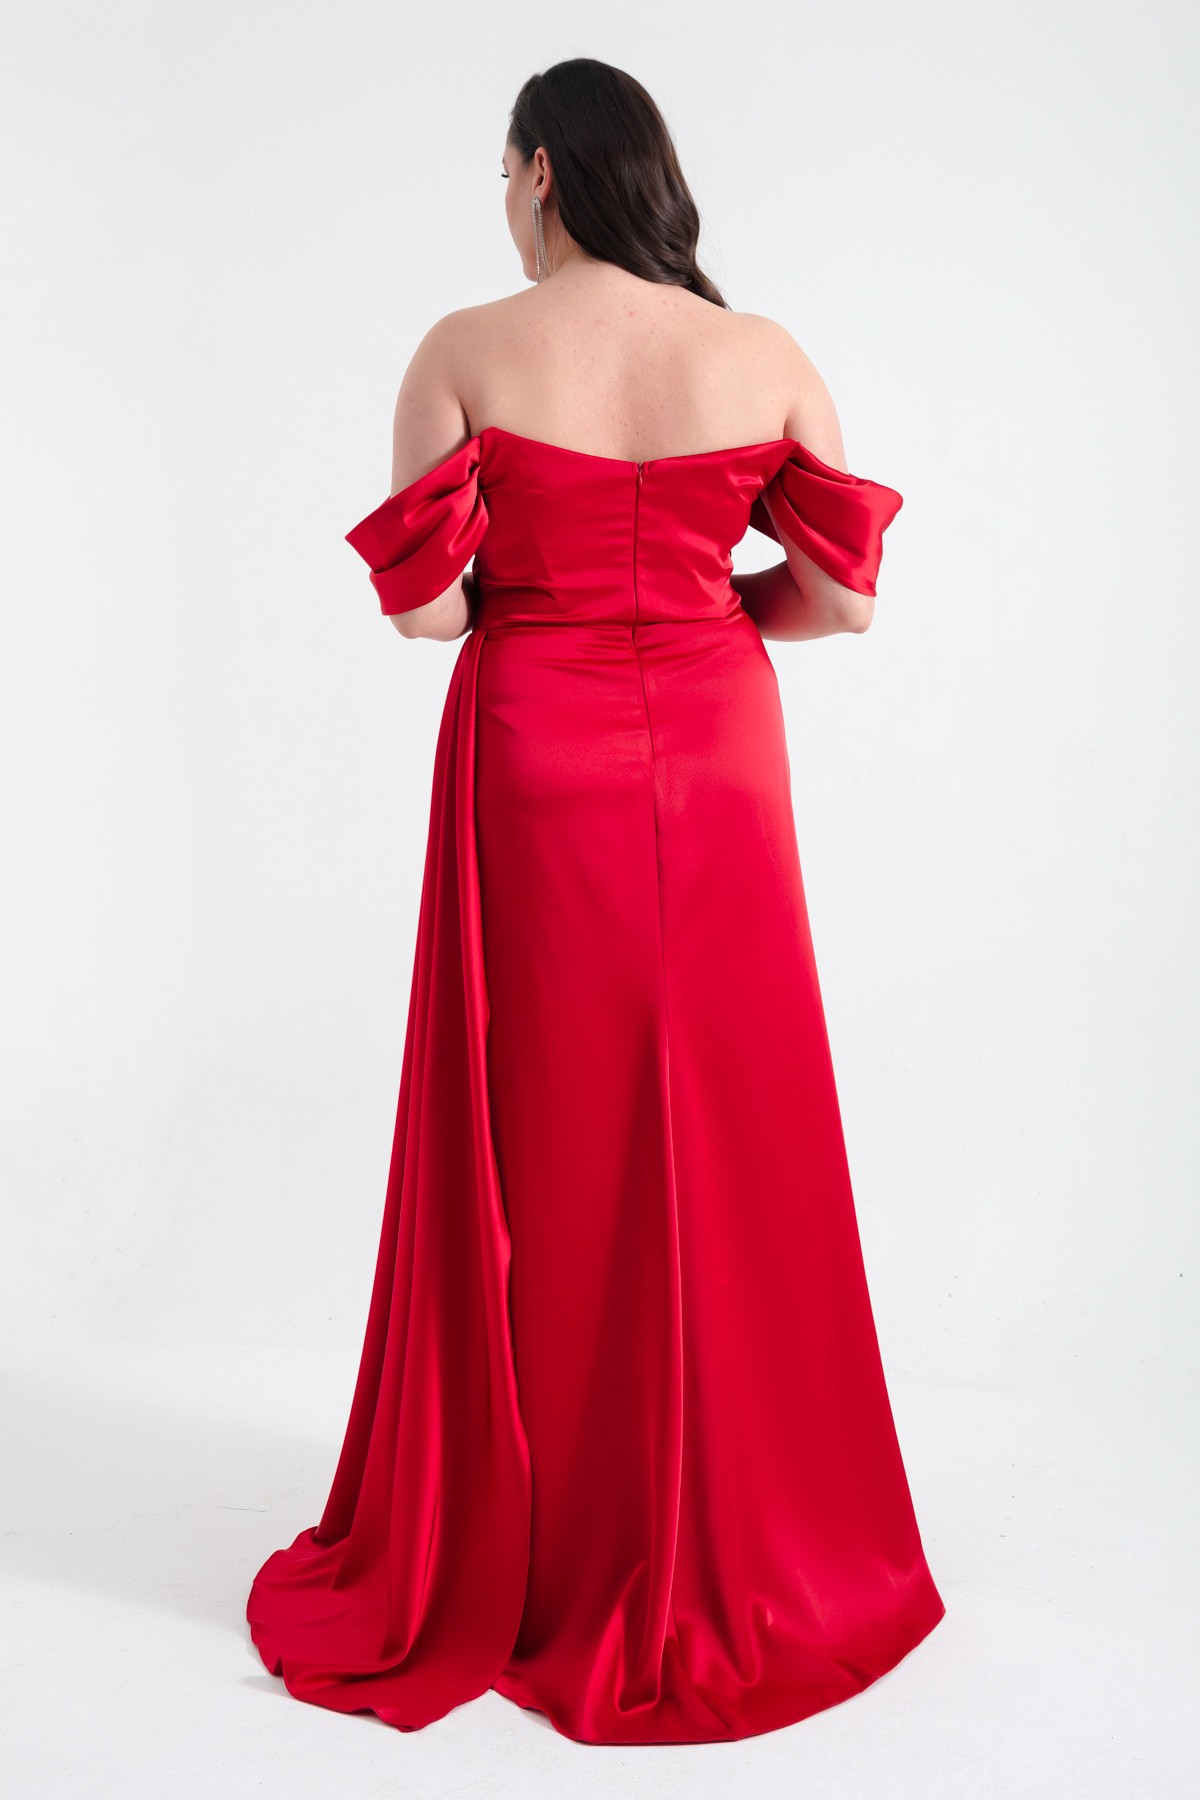 Kadın Kayık Yaka Yırtmaçlı Uzun Büyük Beden Saten Abiye Elbise - Kırmızı